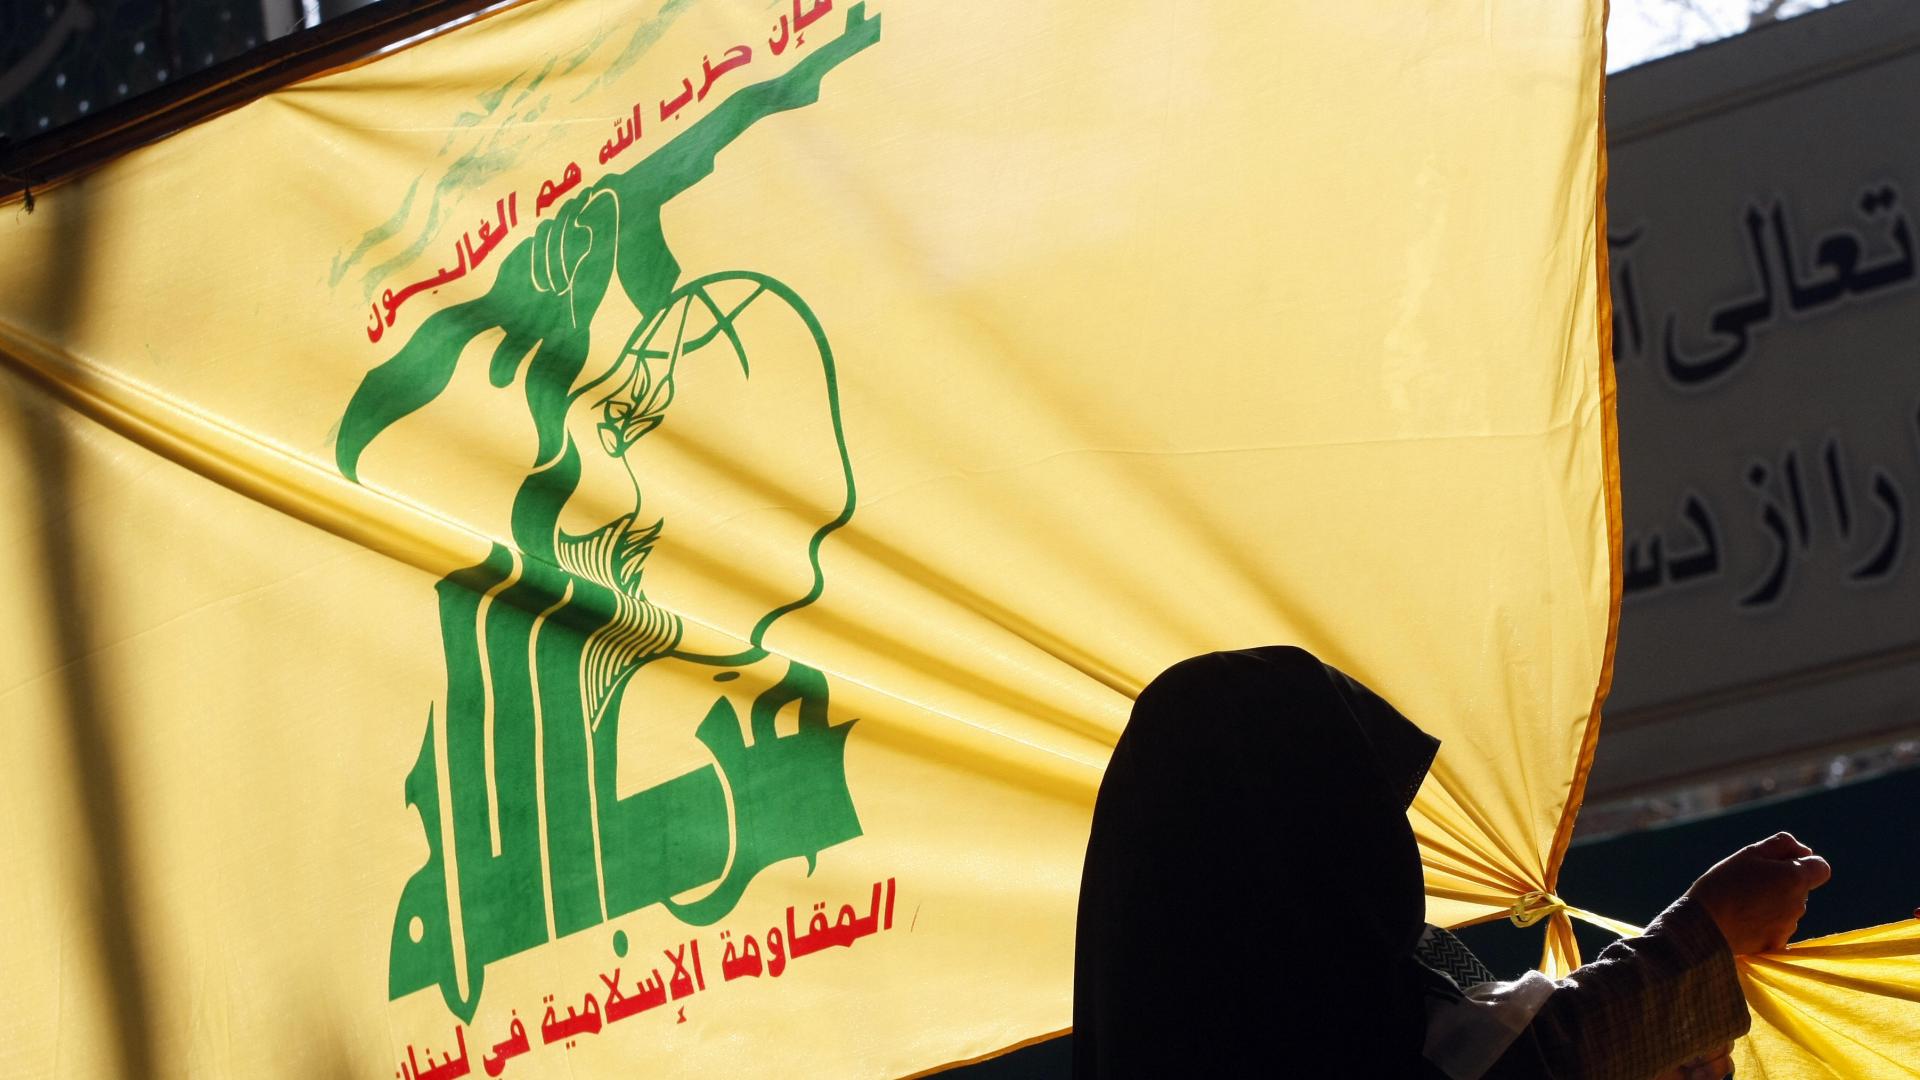 خارجية أميركا تذكّر بـ”تقارير” شبكة دعارة لـ”حزب الله” تشغّل سوريات